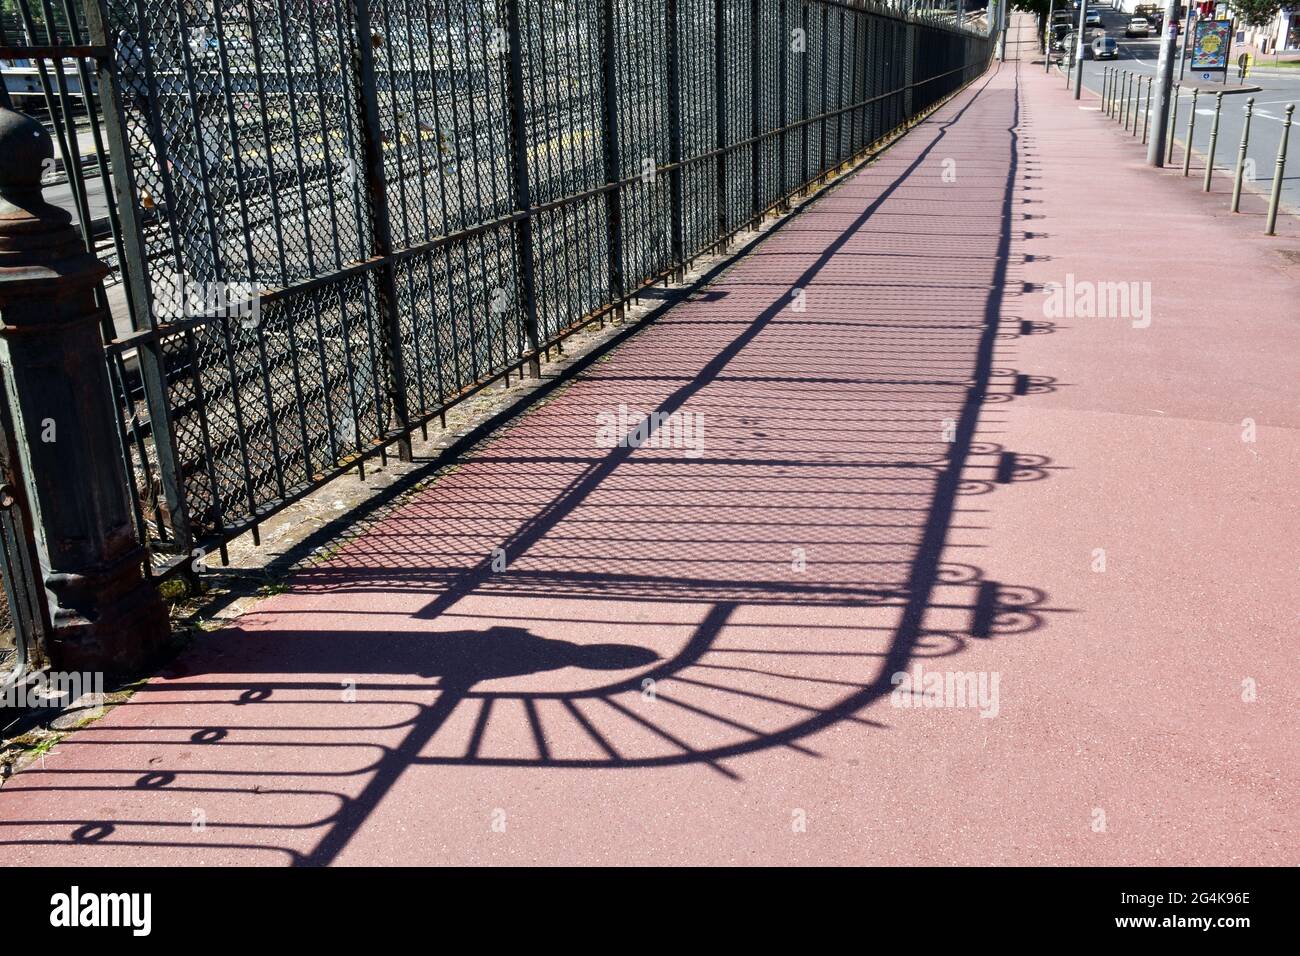 Clôture en fonte et en fer forgé à côté des voies ferrées menant à la gare de Limoges Bénédictine, jetant une ombre intéressante sur un pavé d'asphalte rouge immaculé Banque D'Images